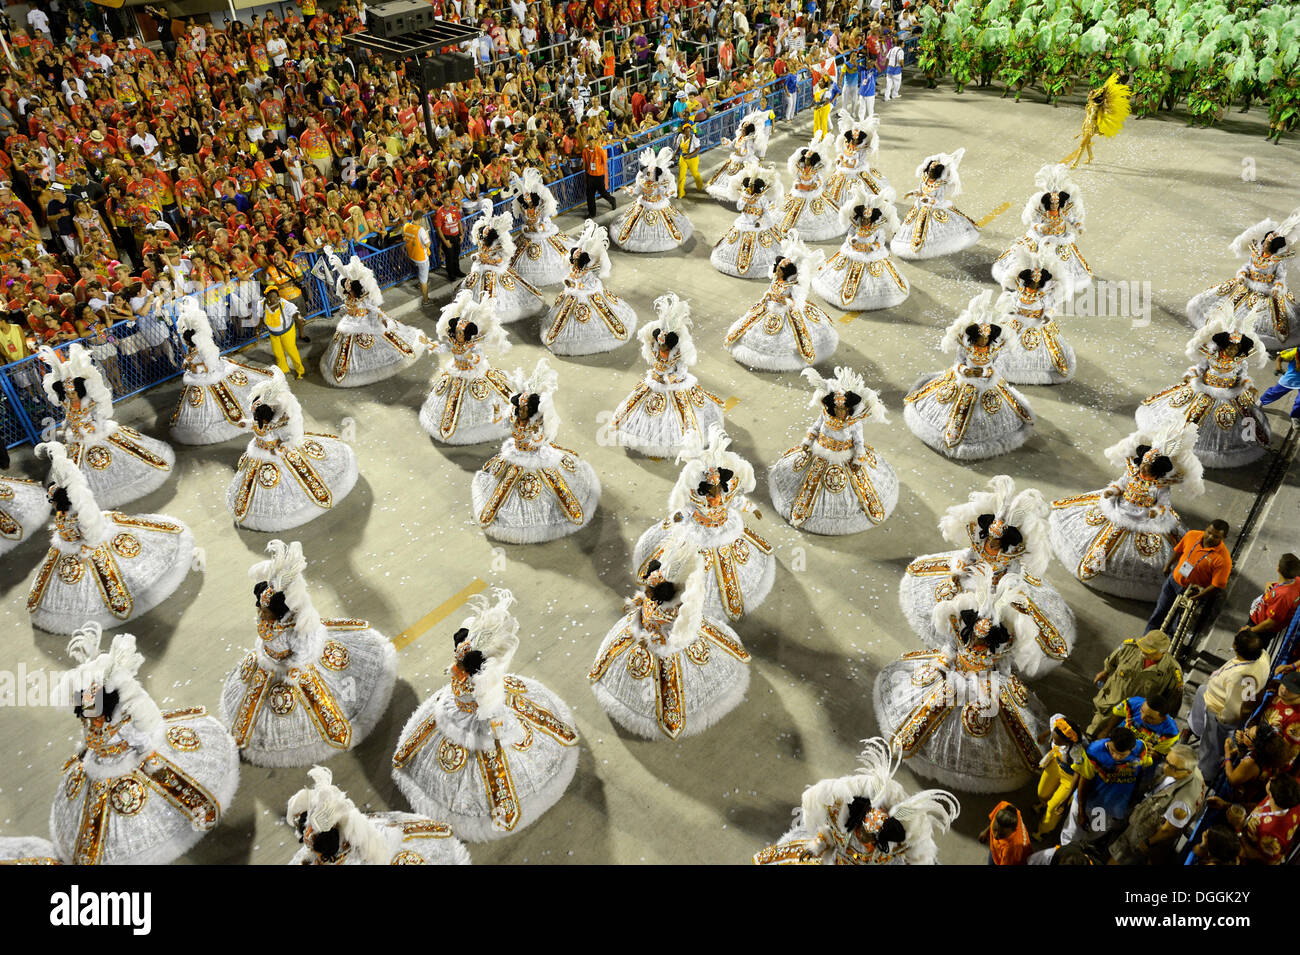 Danseuses portant des jupes larges, Bahianas, défilé de l'école de samba Unidos da Tijuca, le thème 'Allemagne' Enchantée Banque D'Images